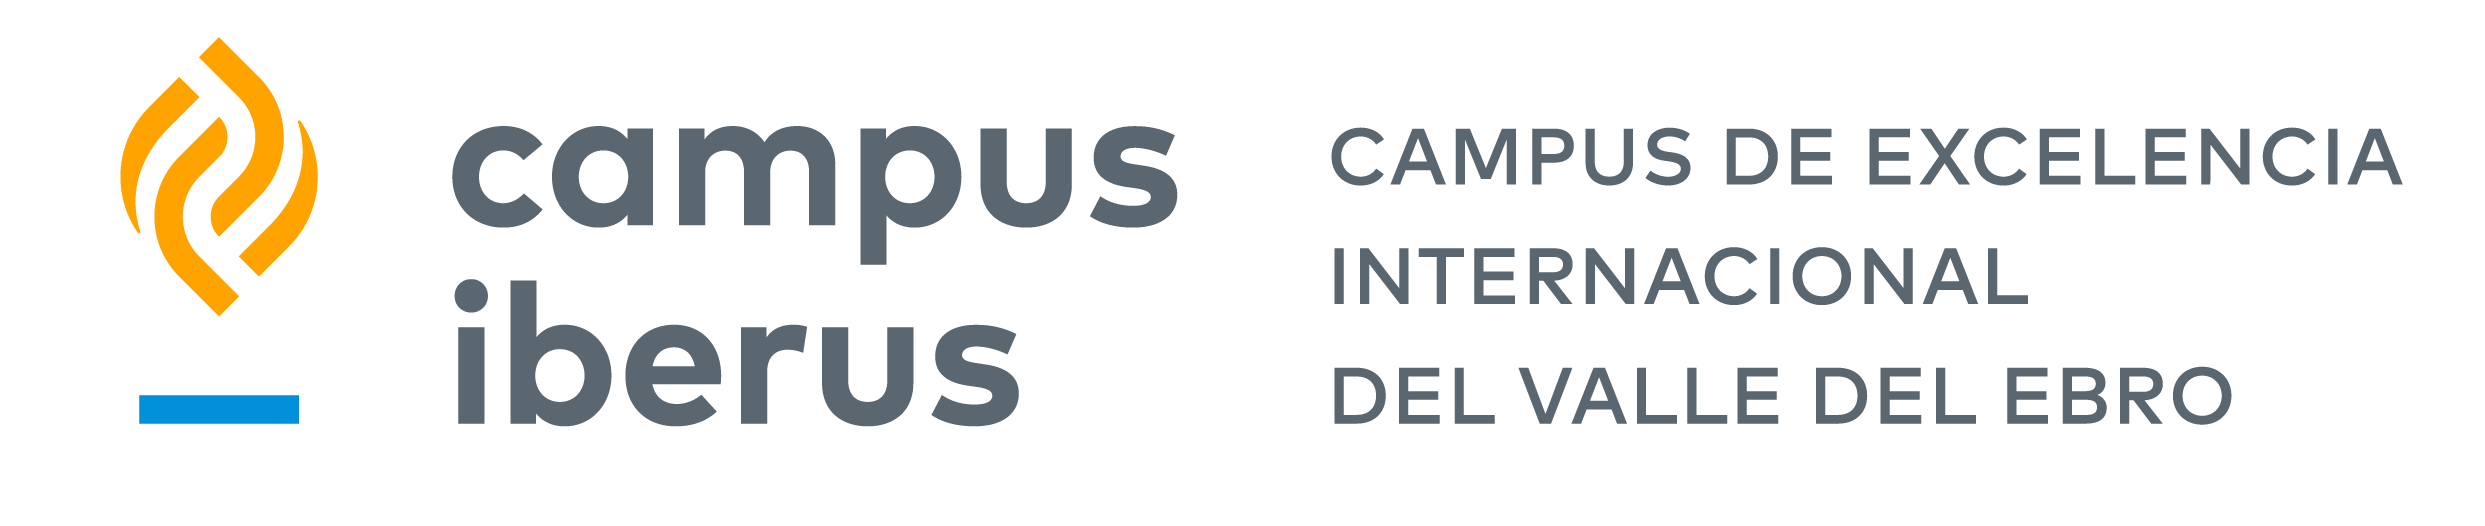 Campus Iberus